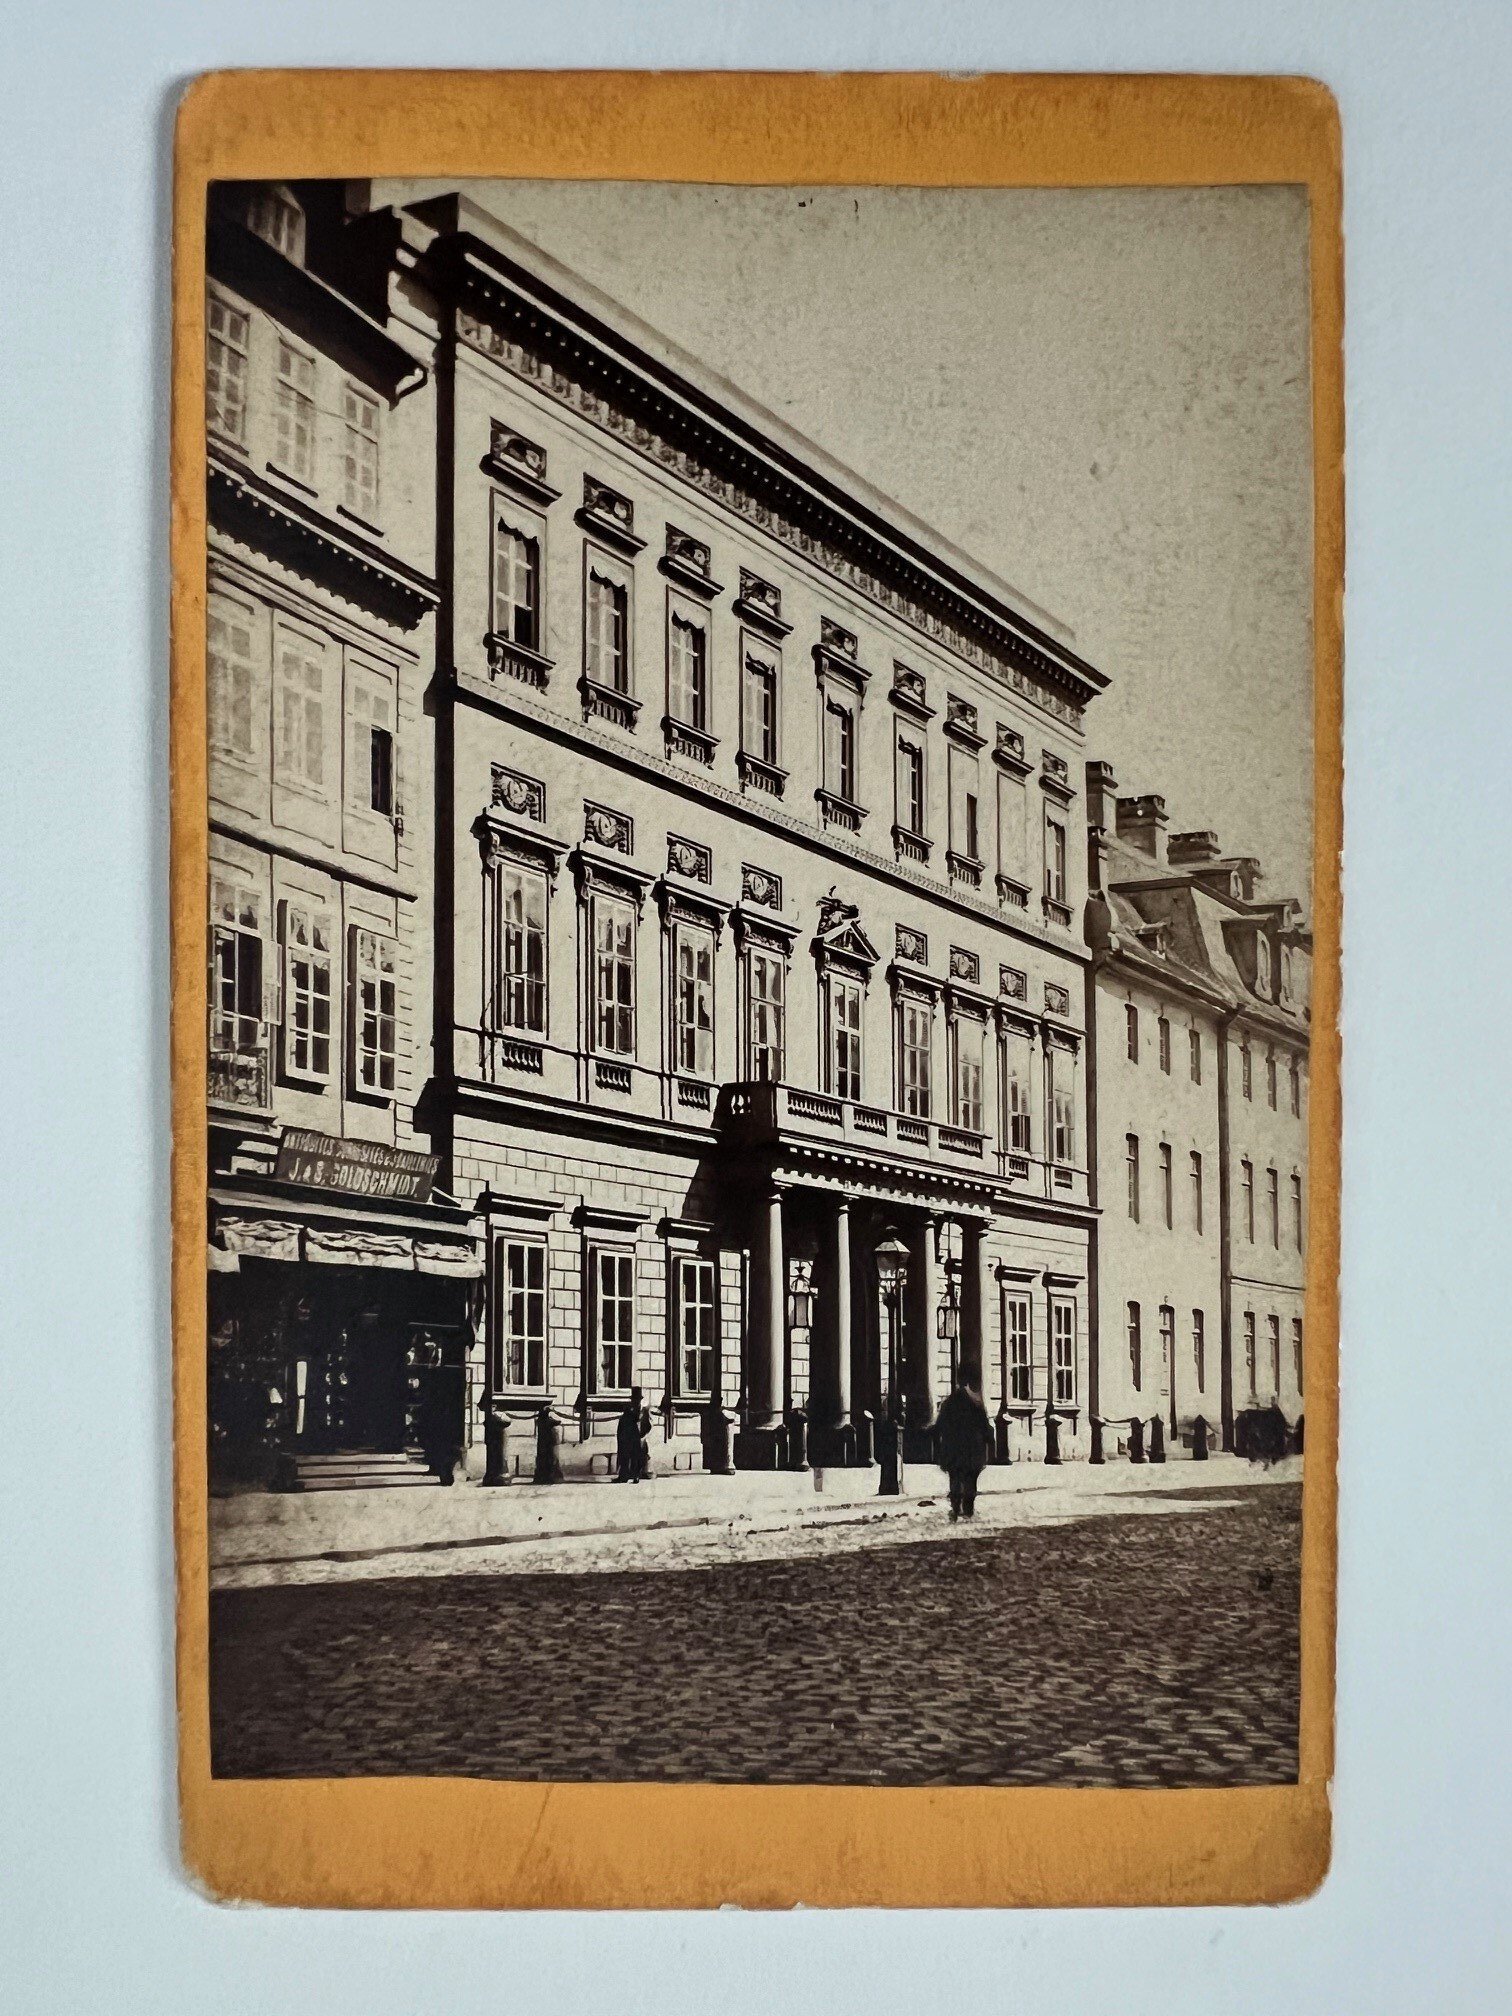 CdV, Theodor Creifelds, Frankfurt, Nr. 283, Russischer Hof, ca. 1872. (Taunus-Rhein-Main - Regionalgeschichtliche Sammlung Dr. Stefan Naas CC BY-NC-SA)